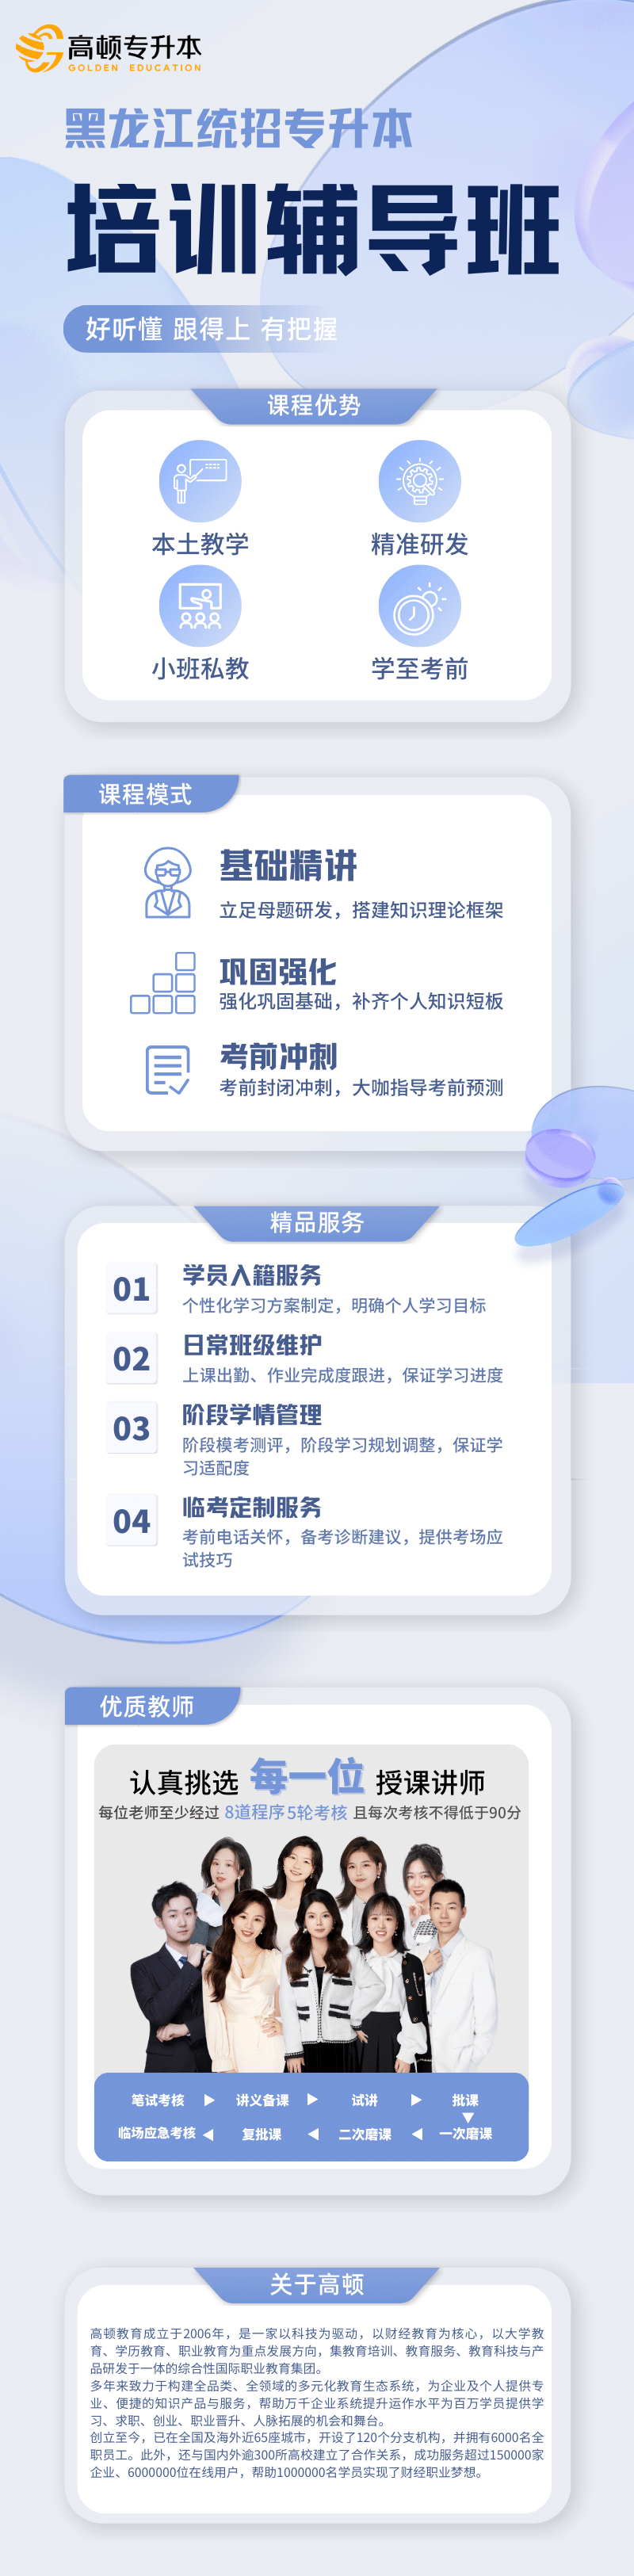 https://simg01.gaodunwangxiao.com/uploadfiles/product-center/202309/14/ecc4a_20230914130933.png